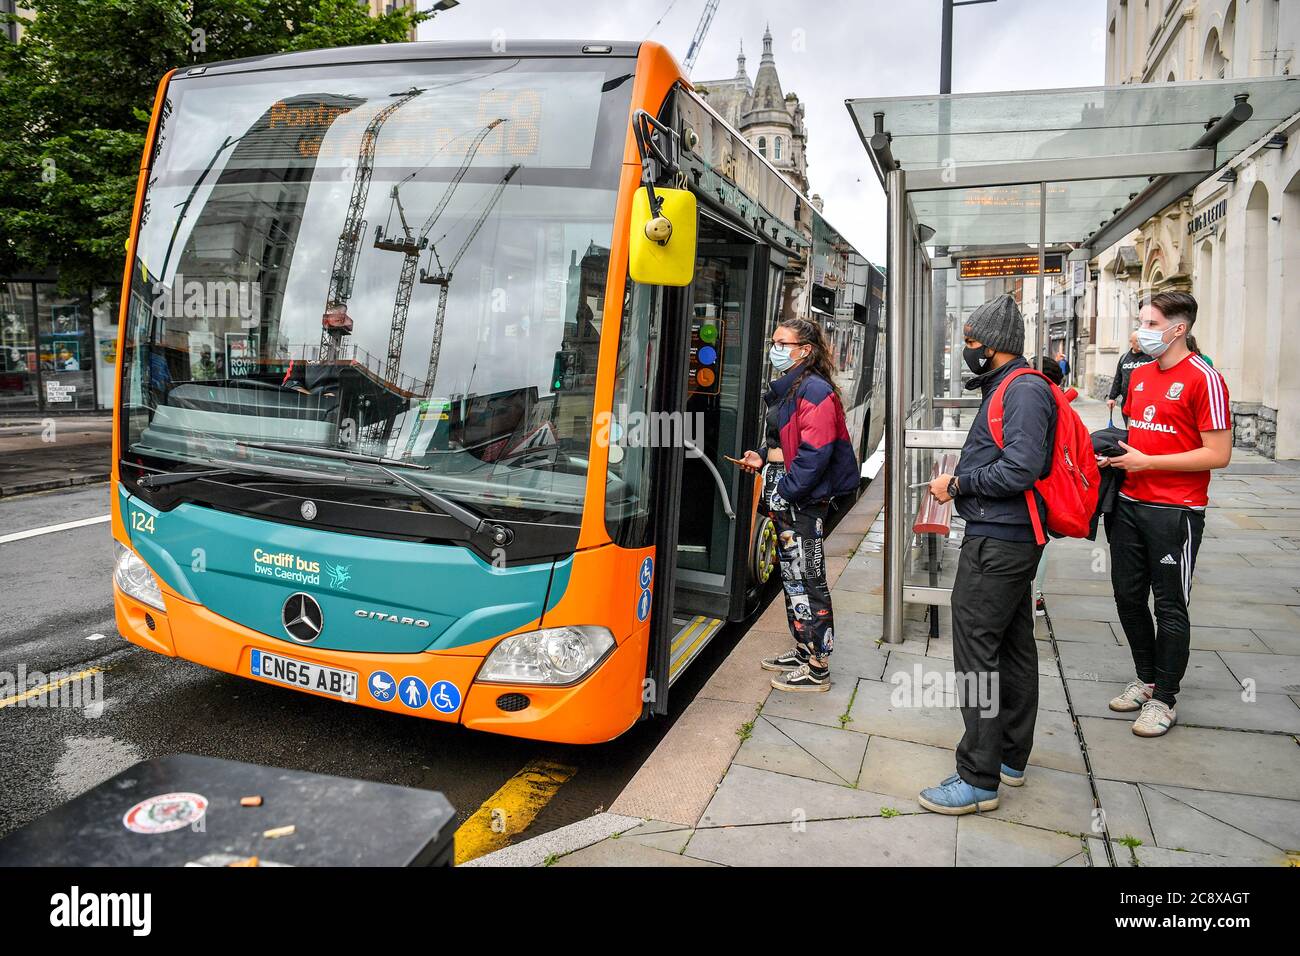 Passagiere stehen in Cardiff an Bord eines Busses, da Gesichtsbedeckungen in den öffentlichen Verkehrsmitteln in Wales obligatorisch werden, um die Ausbreitung des Coronavirus zu verhindern. Stockfoto